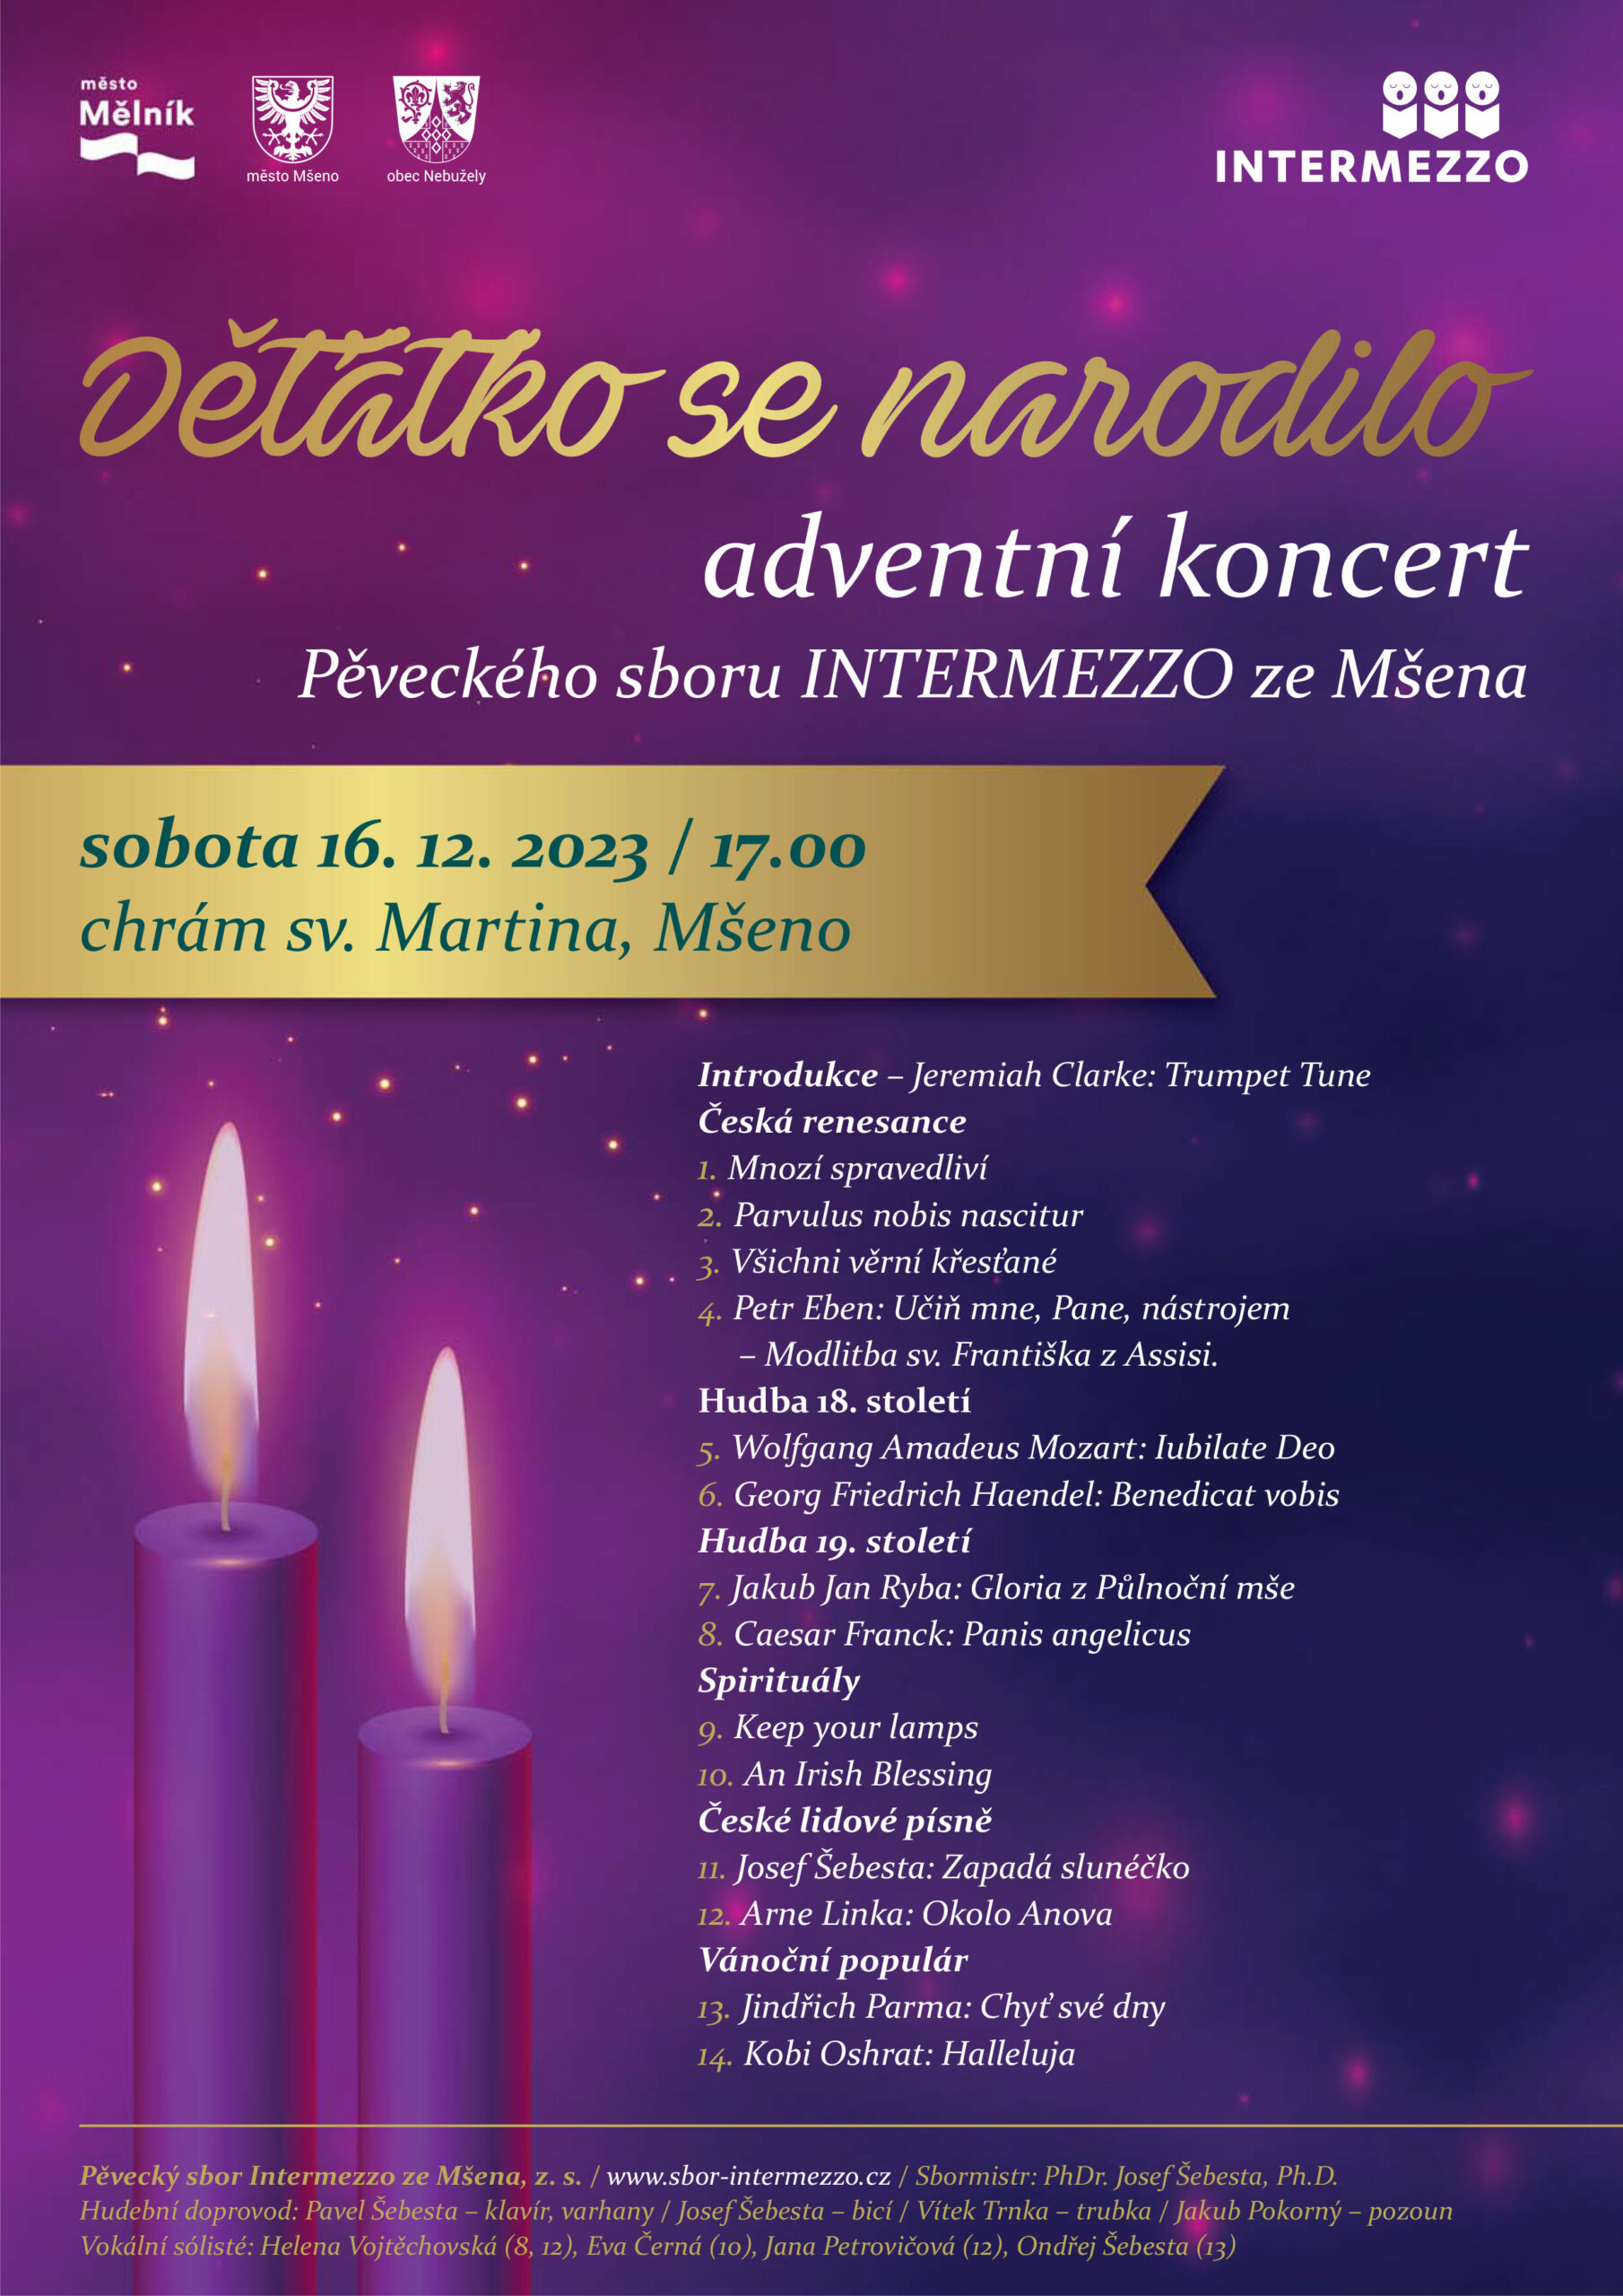 Adventní koncert v chrámu sv. Martina v Mšeně